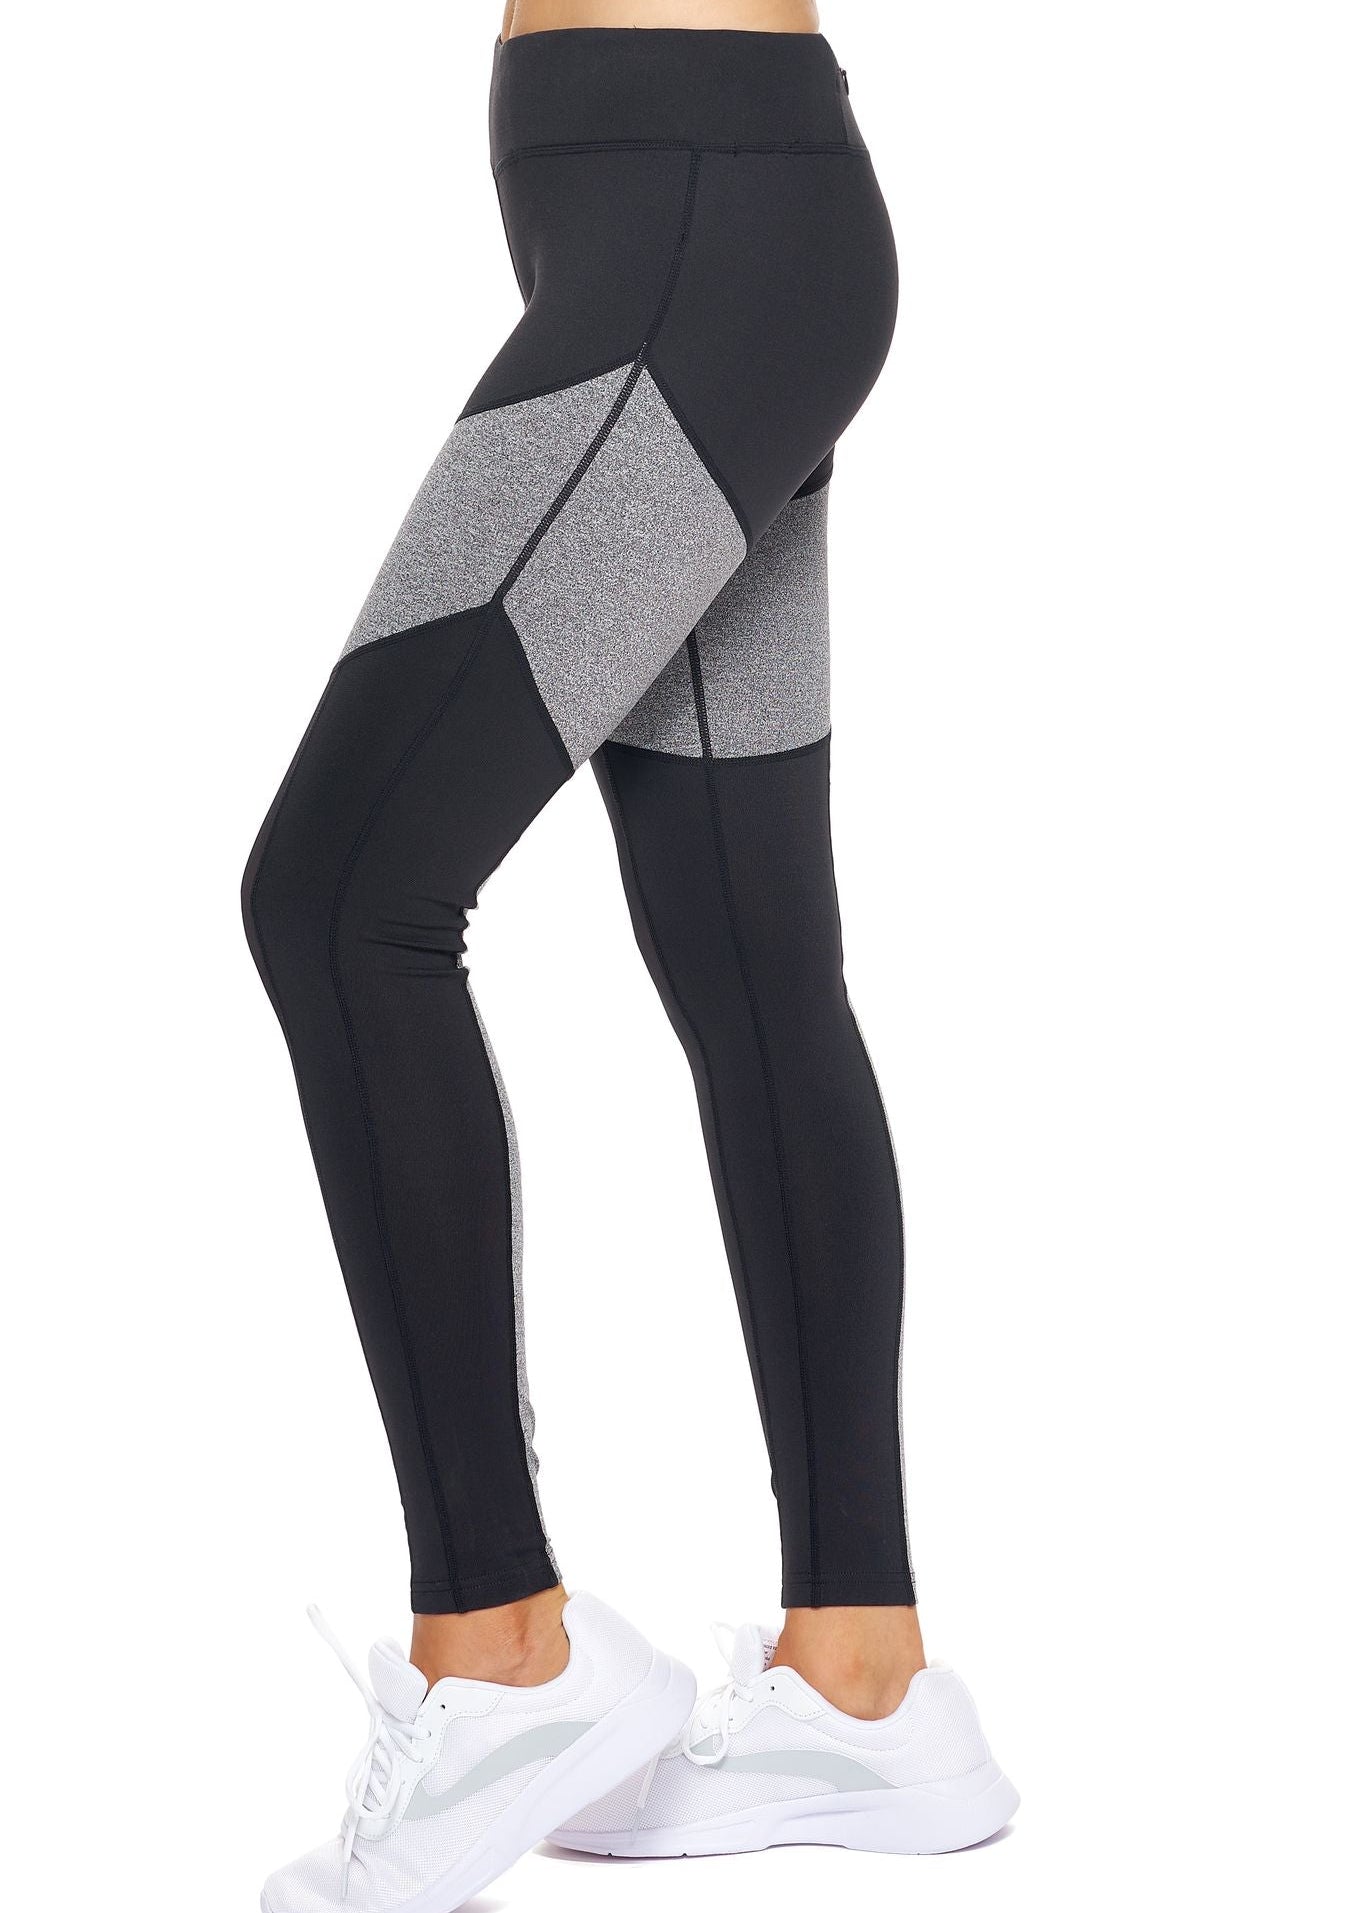 Expert Brand Women's Airstretch Mid-Rise Calypso Mesh Full Length Leggings with Pocket - DressbarnLeggings